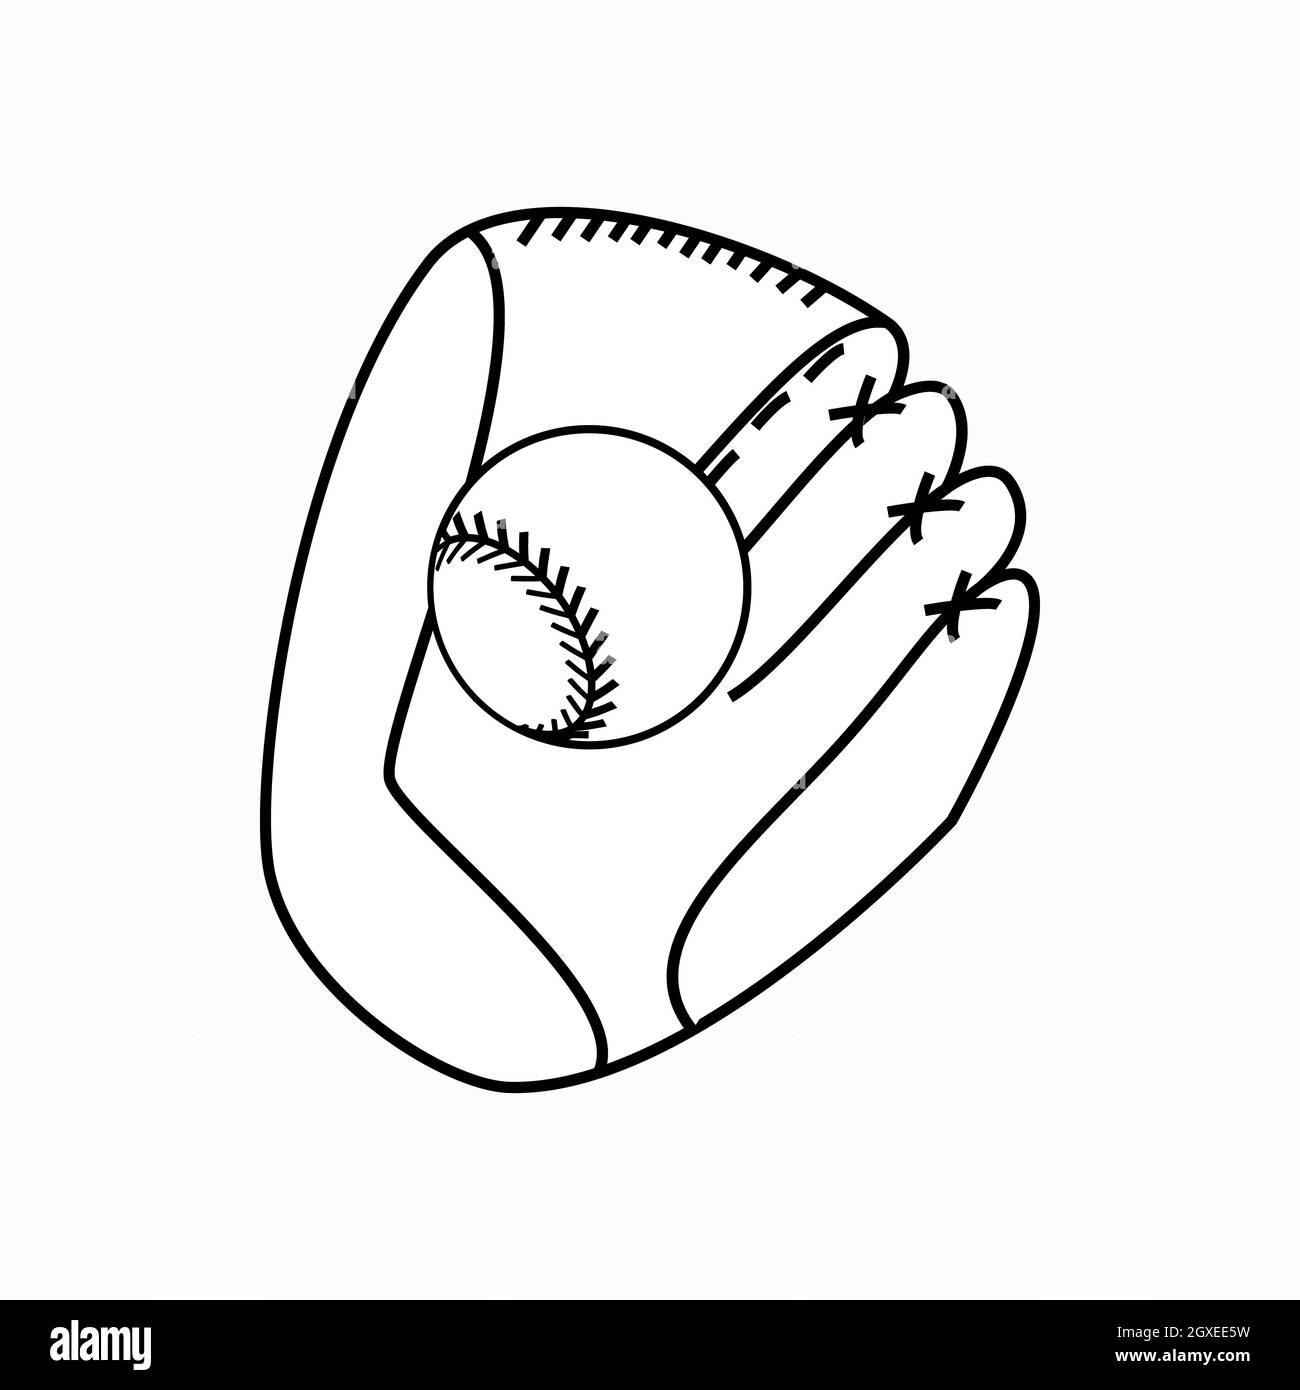 Guanto da baseball con icona a sfera in stile 3D isometrico su sfondo bianco Foto Stock